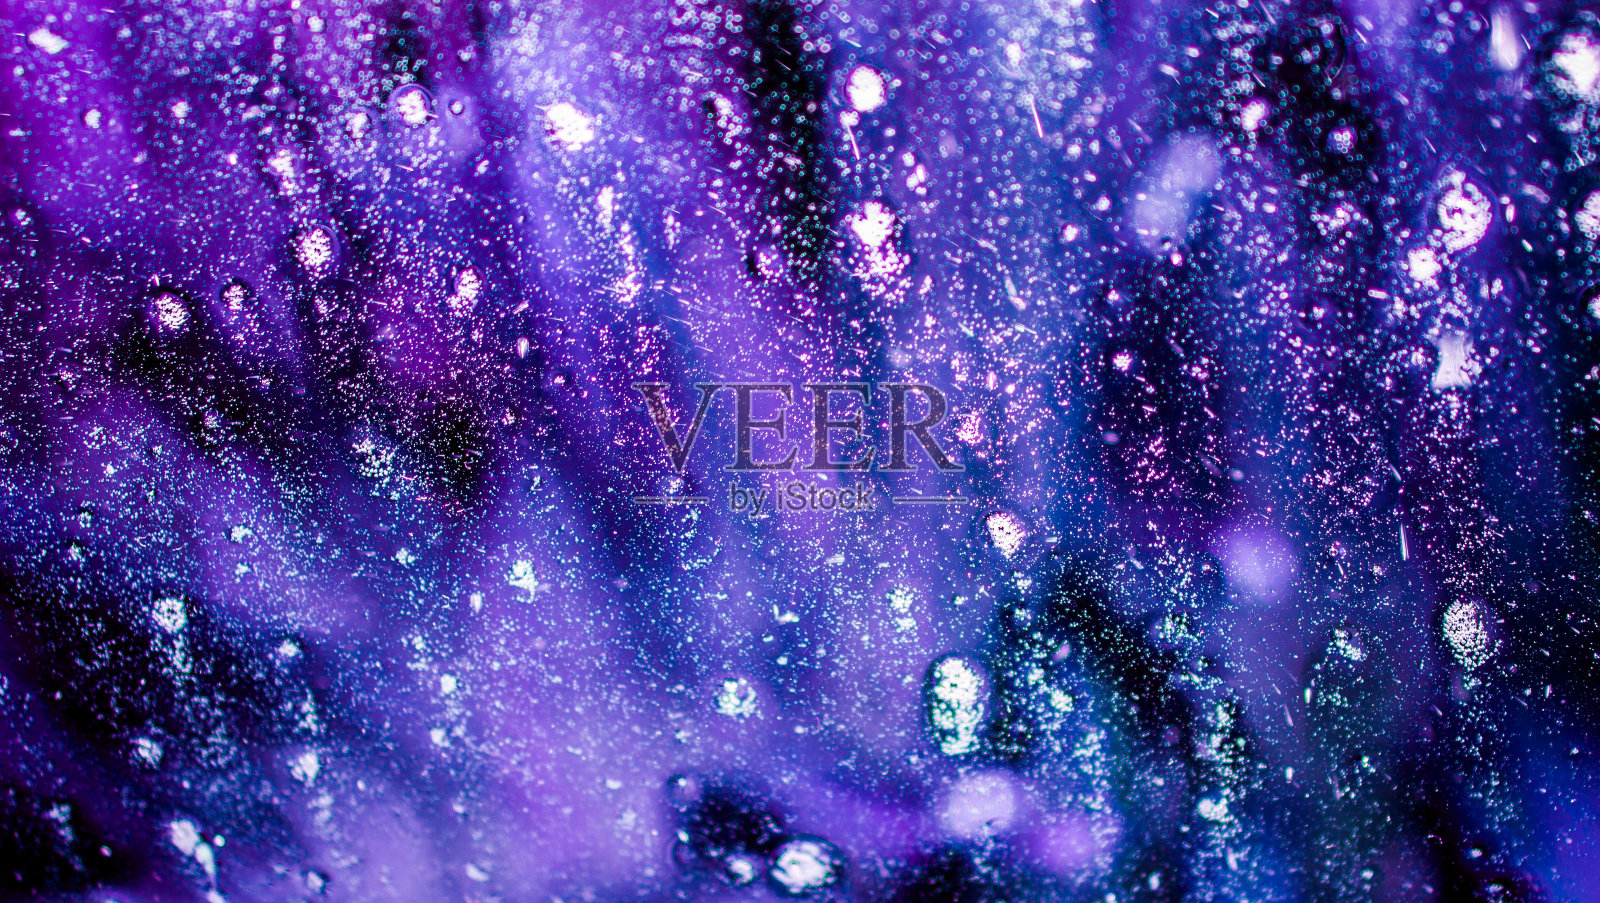 梦幻般的蓝色、紫色、黑色、白色洗车皂和泡沫在窗户上形成一个壮观的背景照片摄影图片